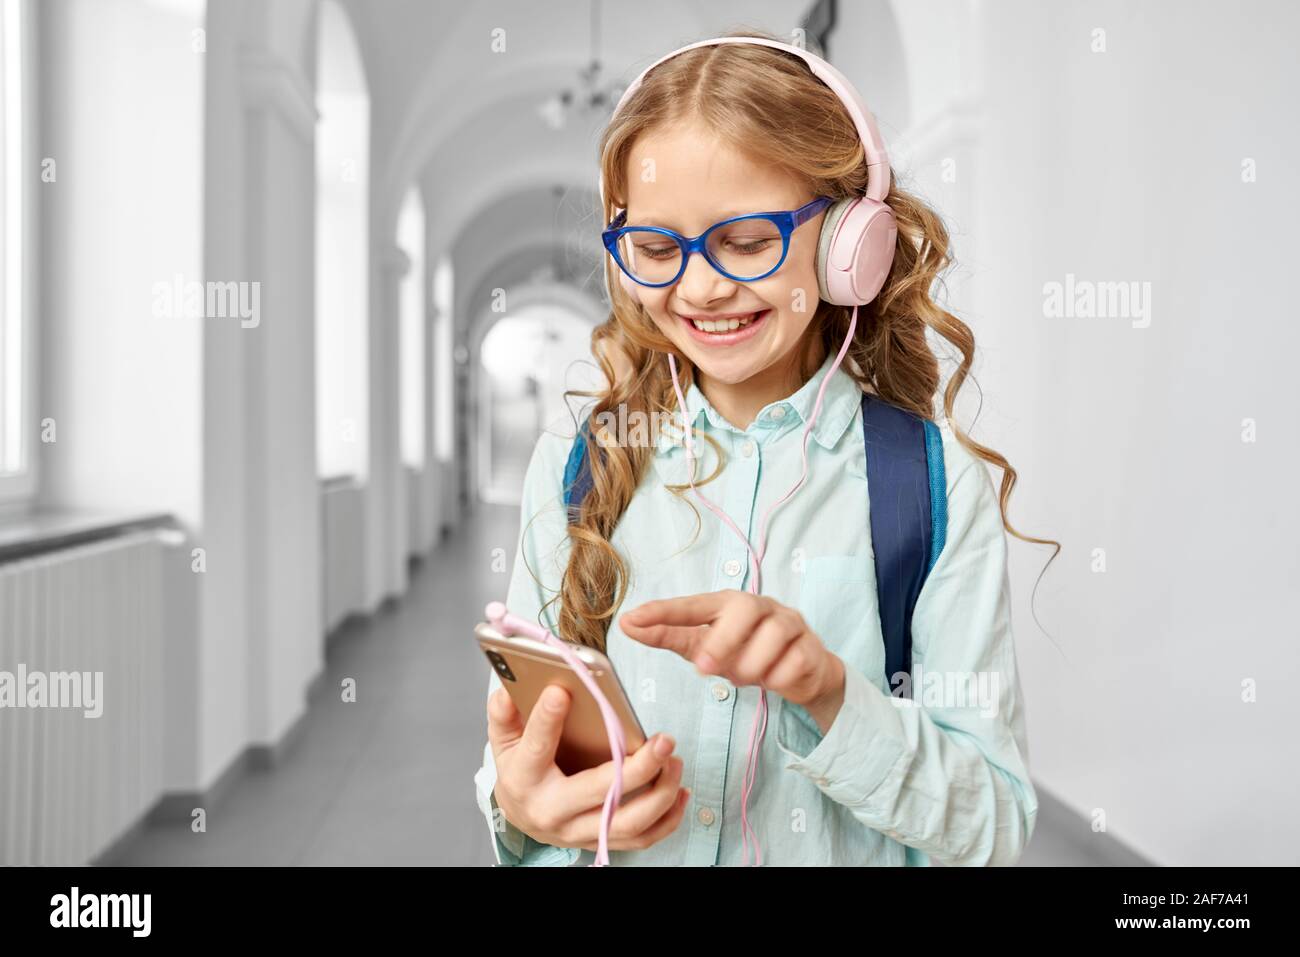 Bella piccola scuola ragazza con i riccioli biondi indossando occhiali e camicia blu utilizza lo smartphone e sorridente. Bella ragazza sul corridoio, chiamata in attesa Foto Stock